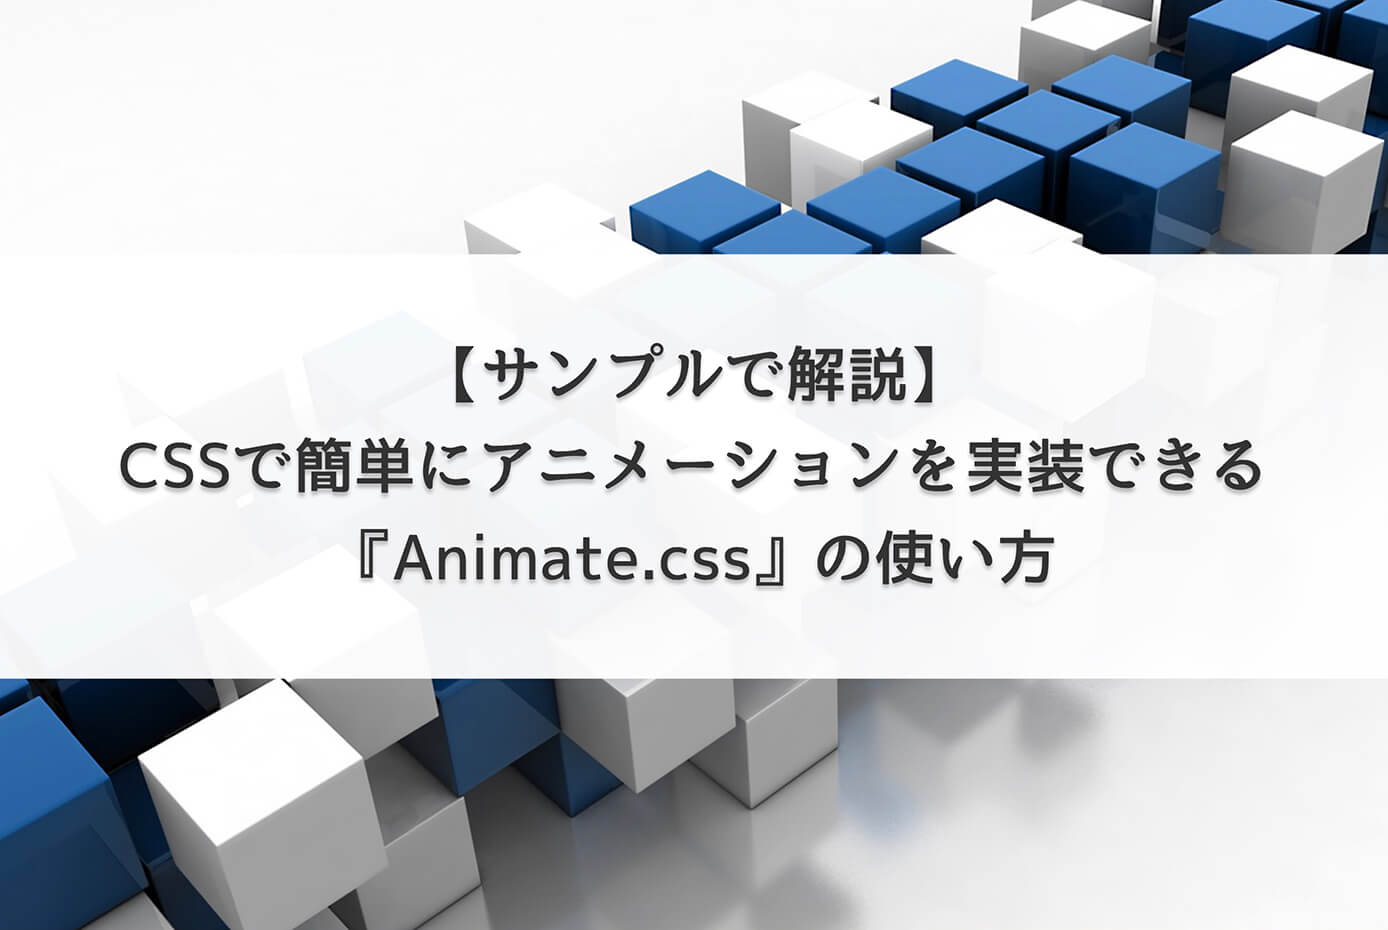 CSSで簡単にアニメーションを実装できる『Animate.css』の使い方【サンプルで解説】